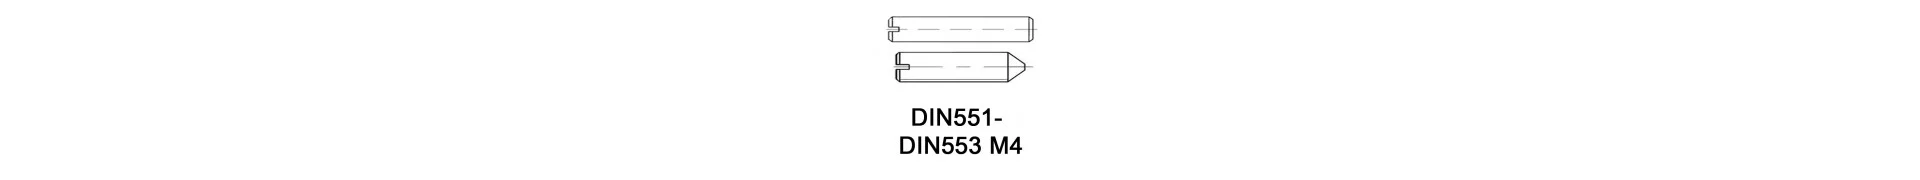 DIN551 - DIN553 M4